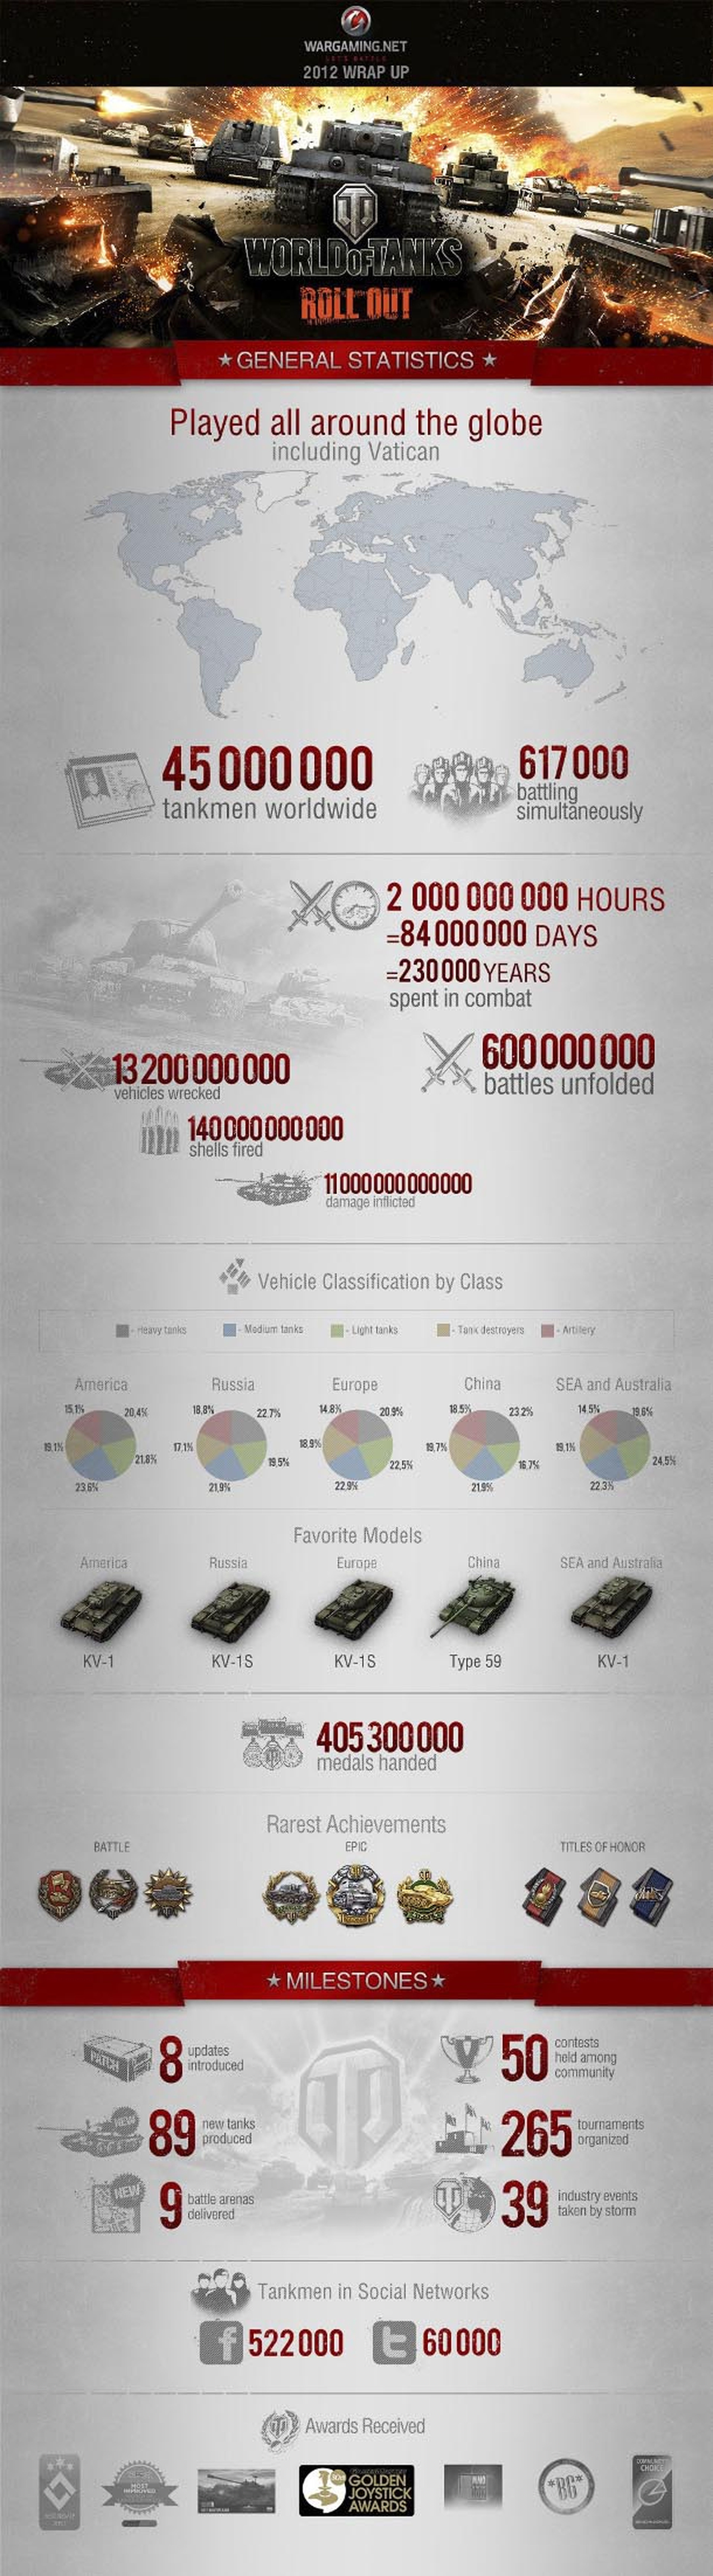 World of Tanks llega a los 45 millones de jugadores